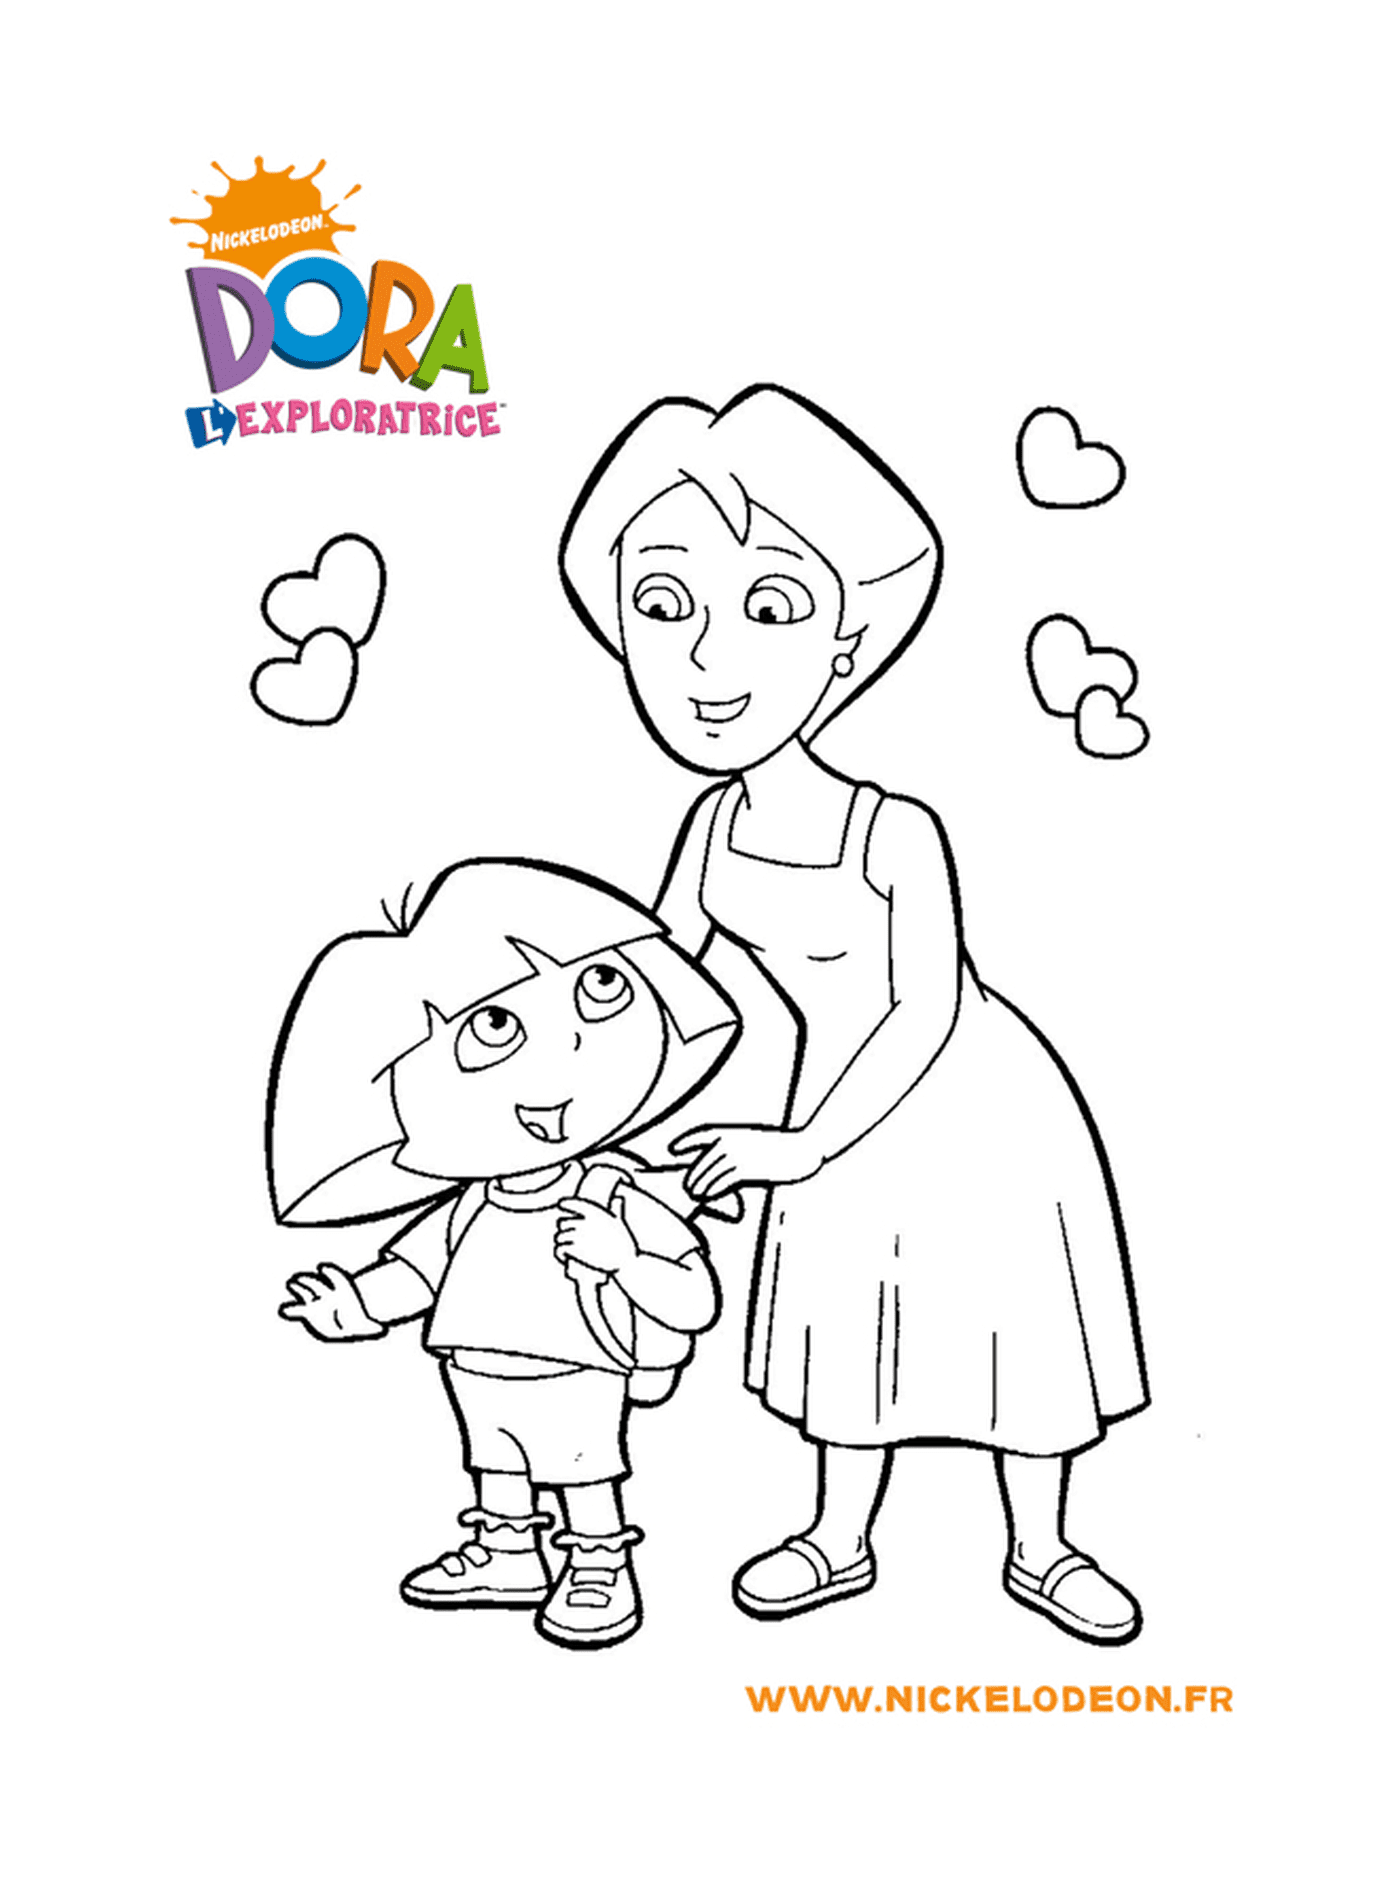  Dora passa um tempo precioso com a mãe 